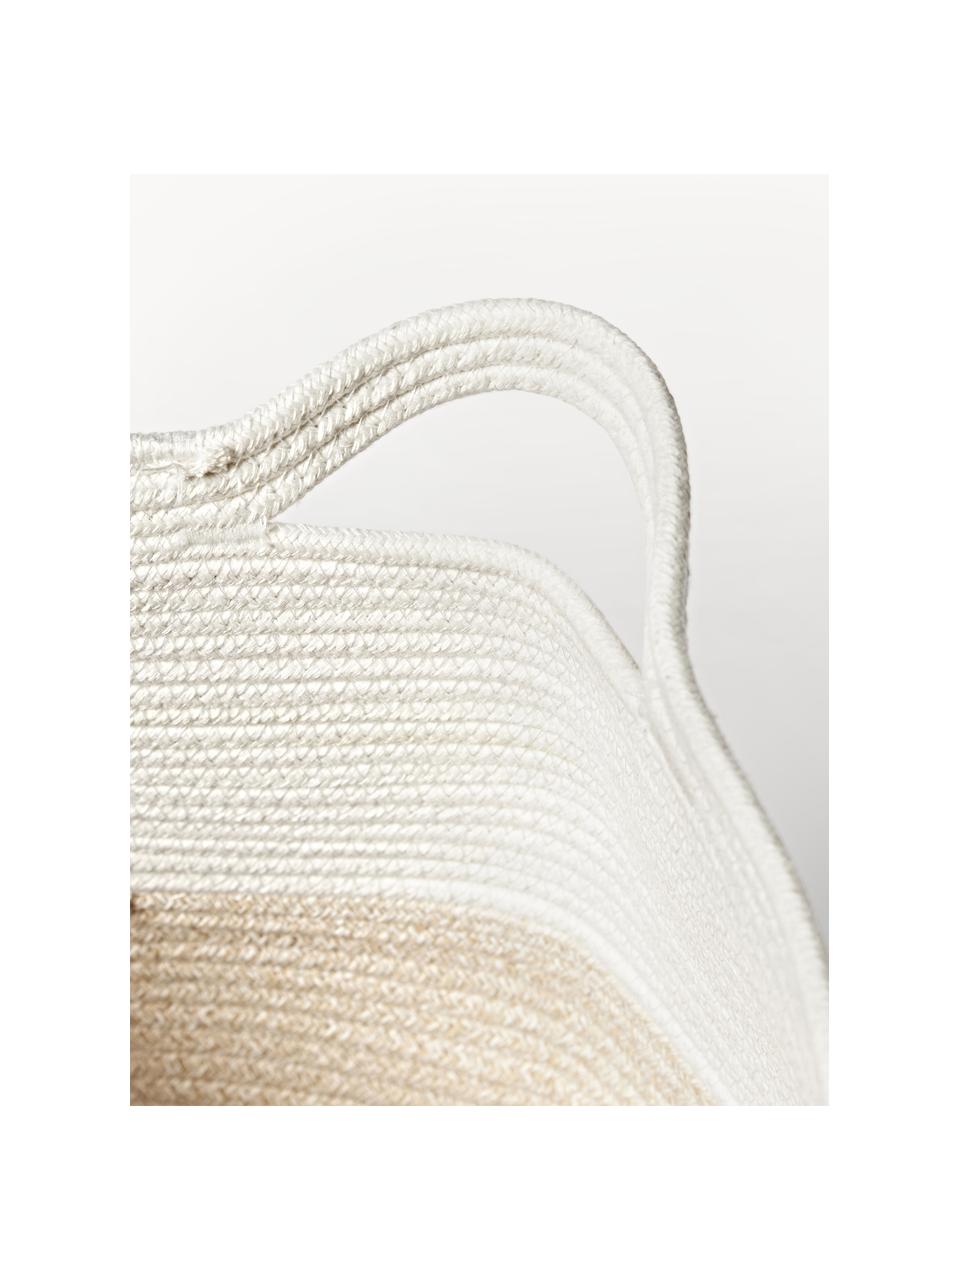 Skladovací koš Kiya, 35 % bavlna, 65 % polyester, Bílá, béžová, Ø 40 cm, V 55 cm